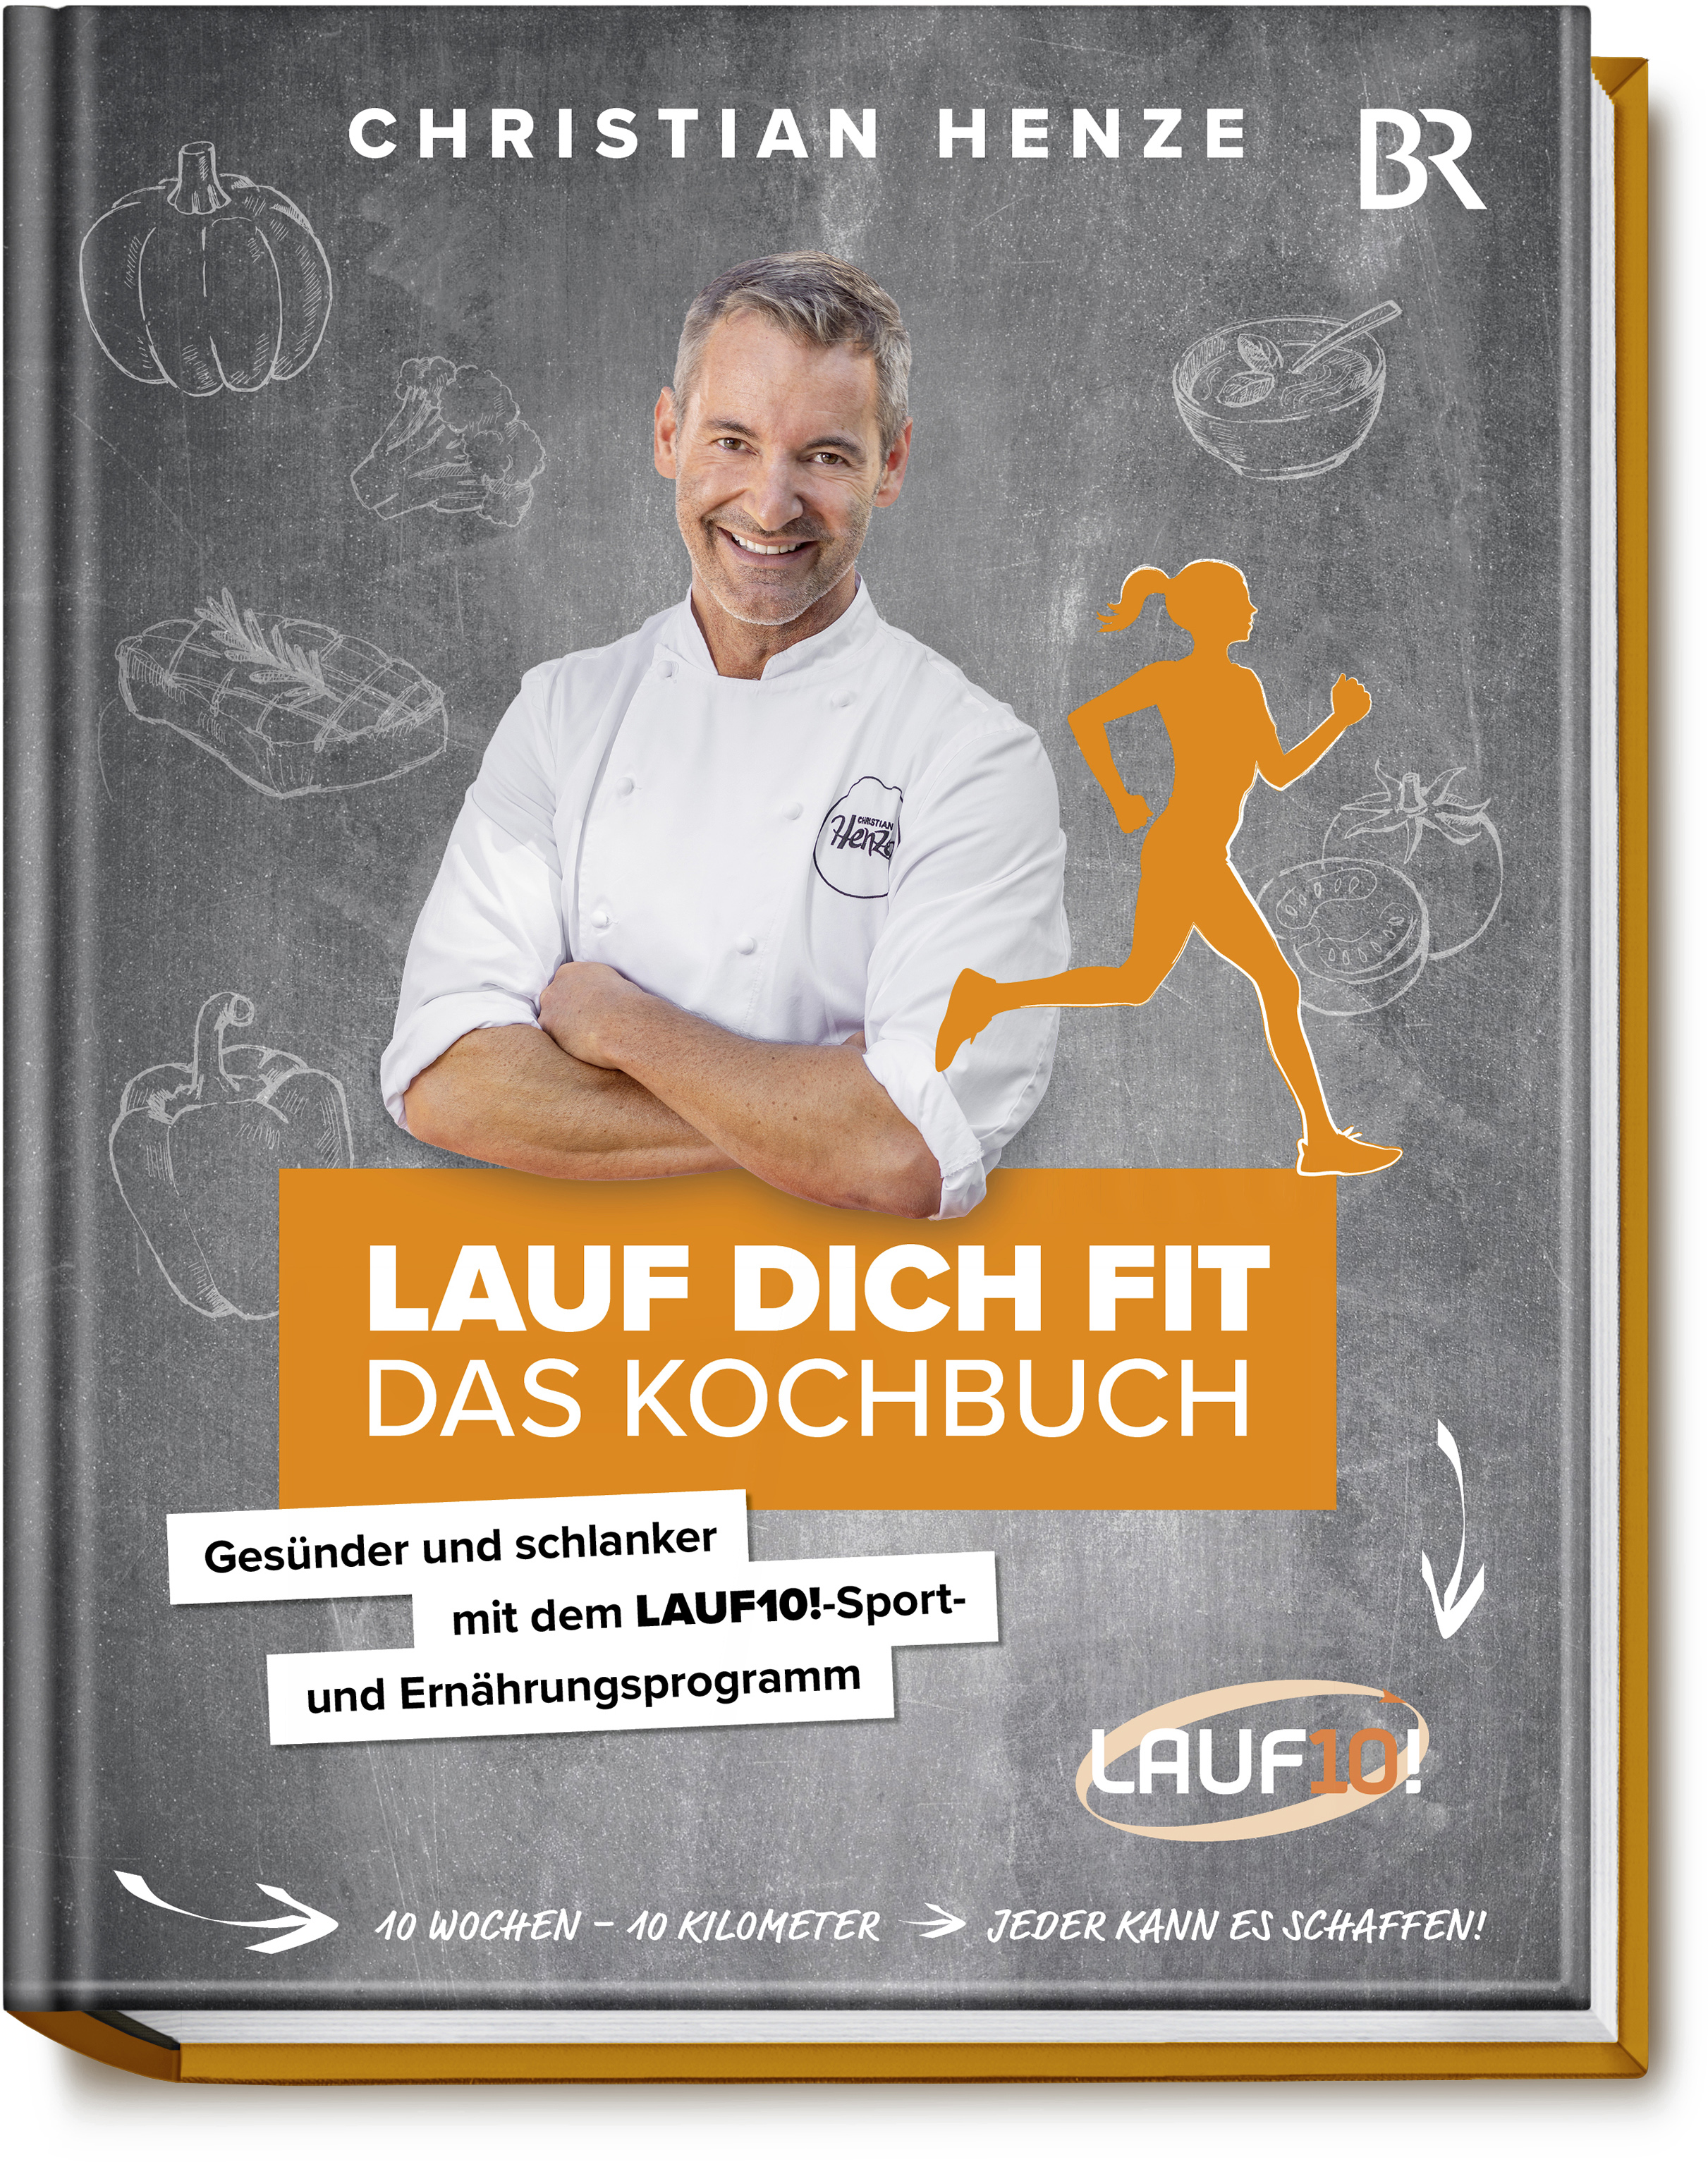 Lauf-dich-fit-Das-Kochbuch-Gesünder-und-schlanker-it-de-LAUF10!Sport-und-Ernährungsprogra